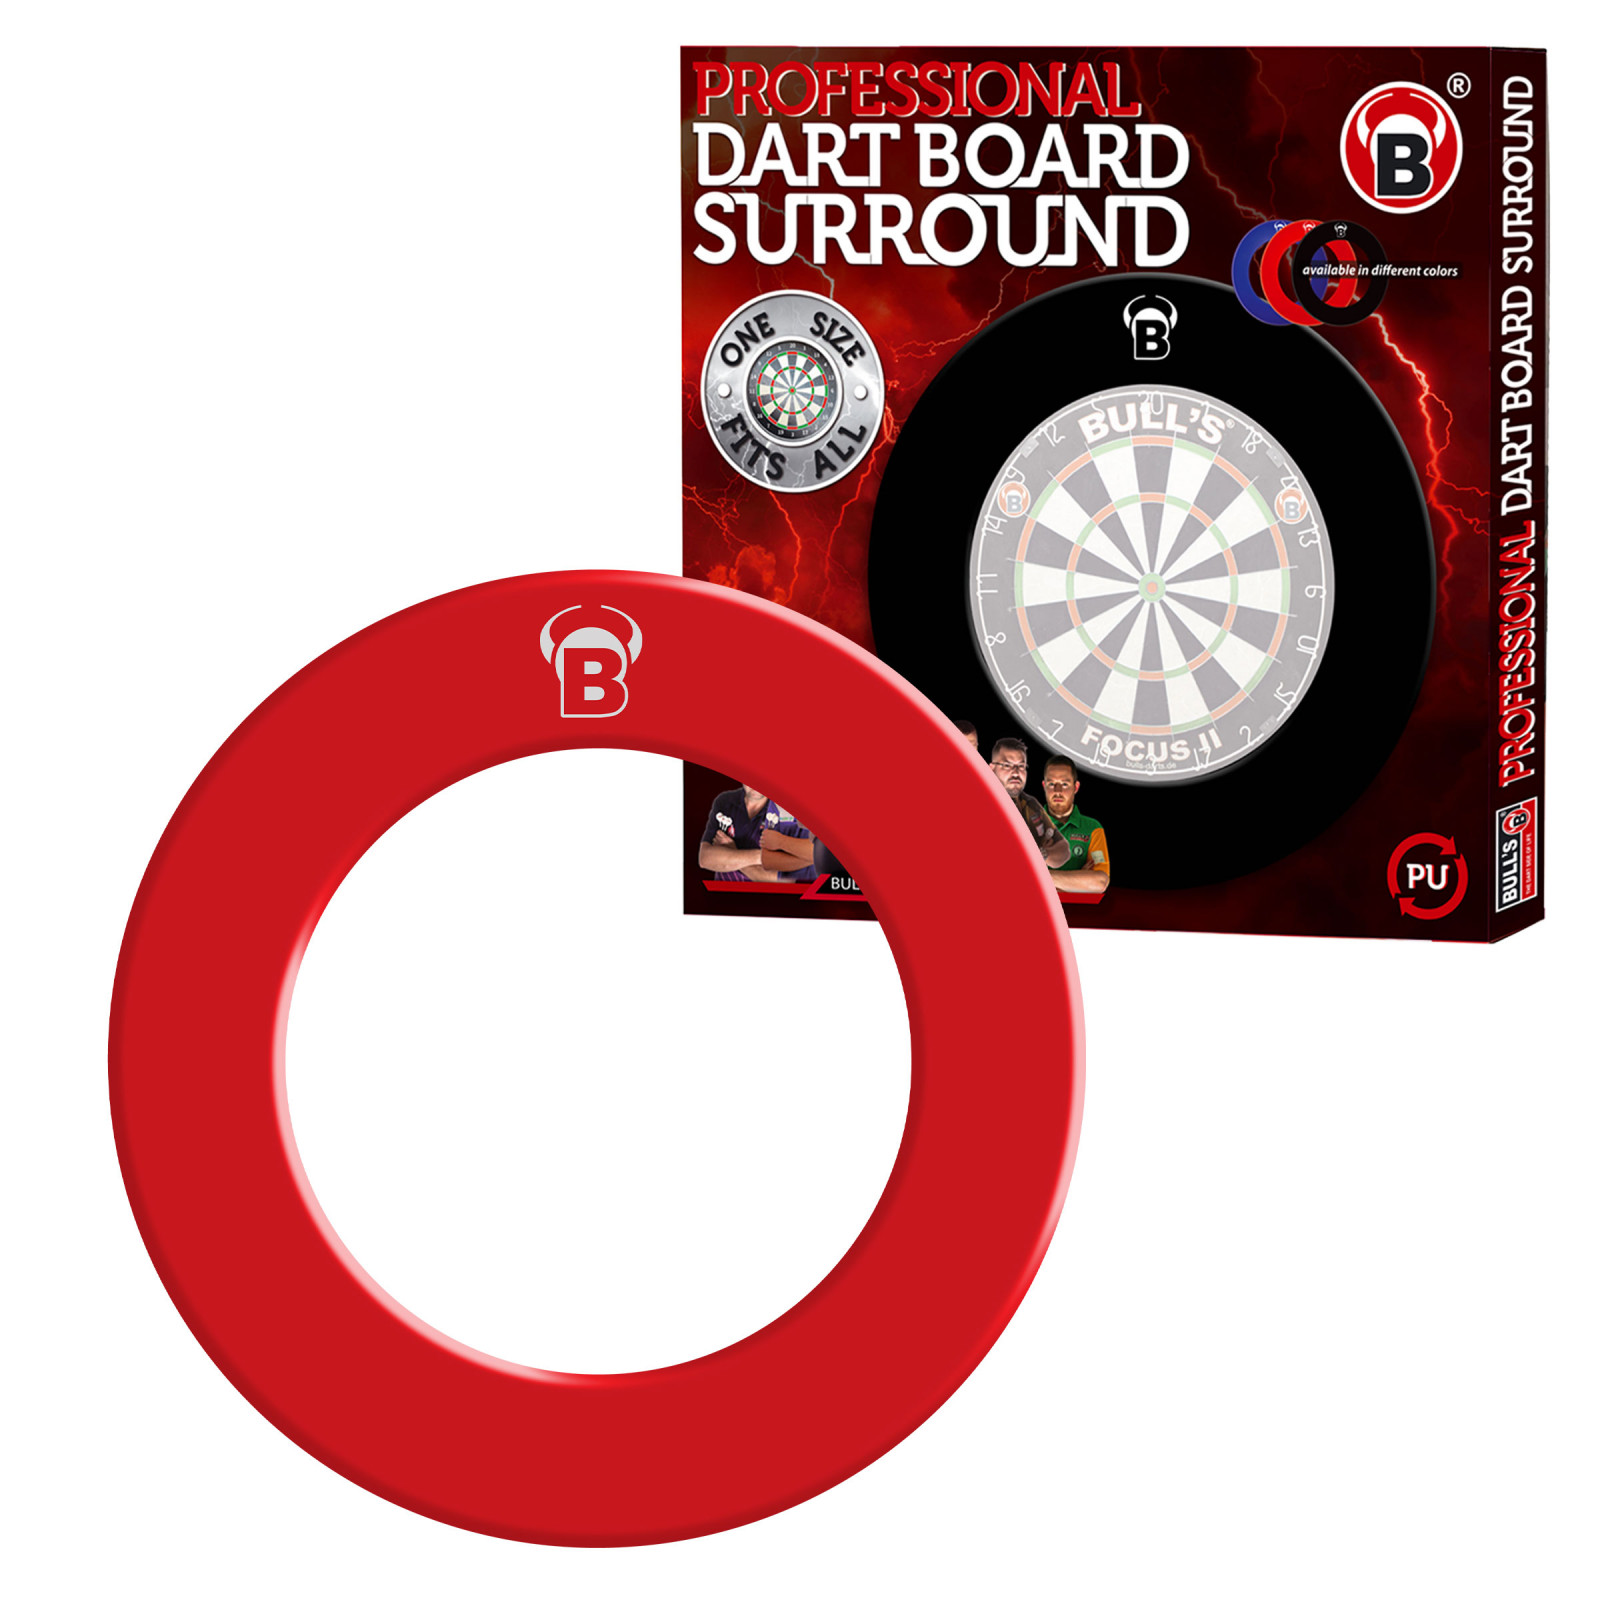 Pro Bull's Dartboard Surround - Rot mit Aufdruck